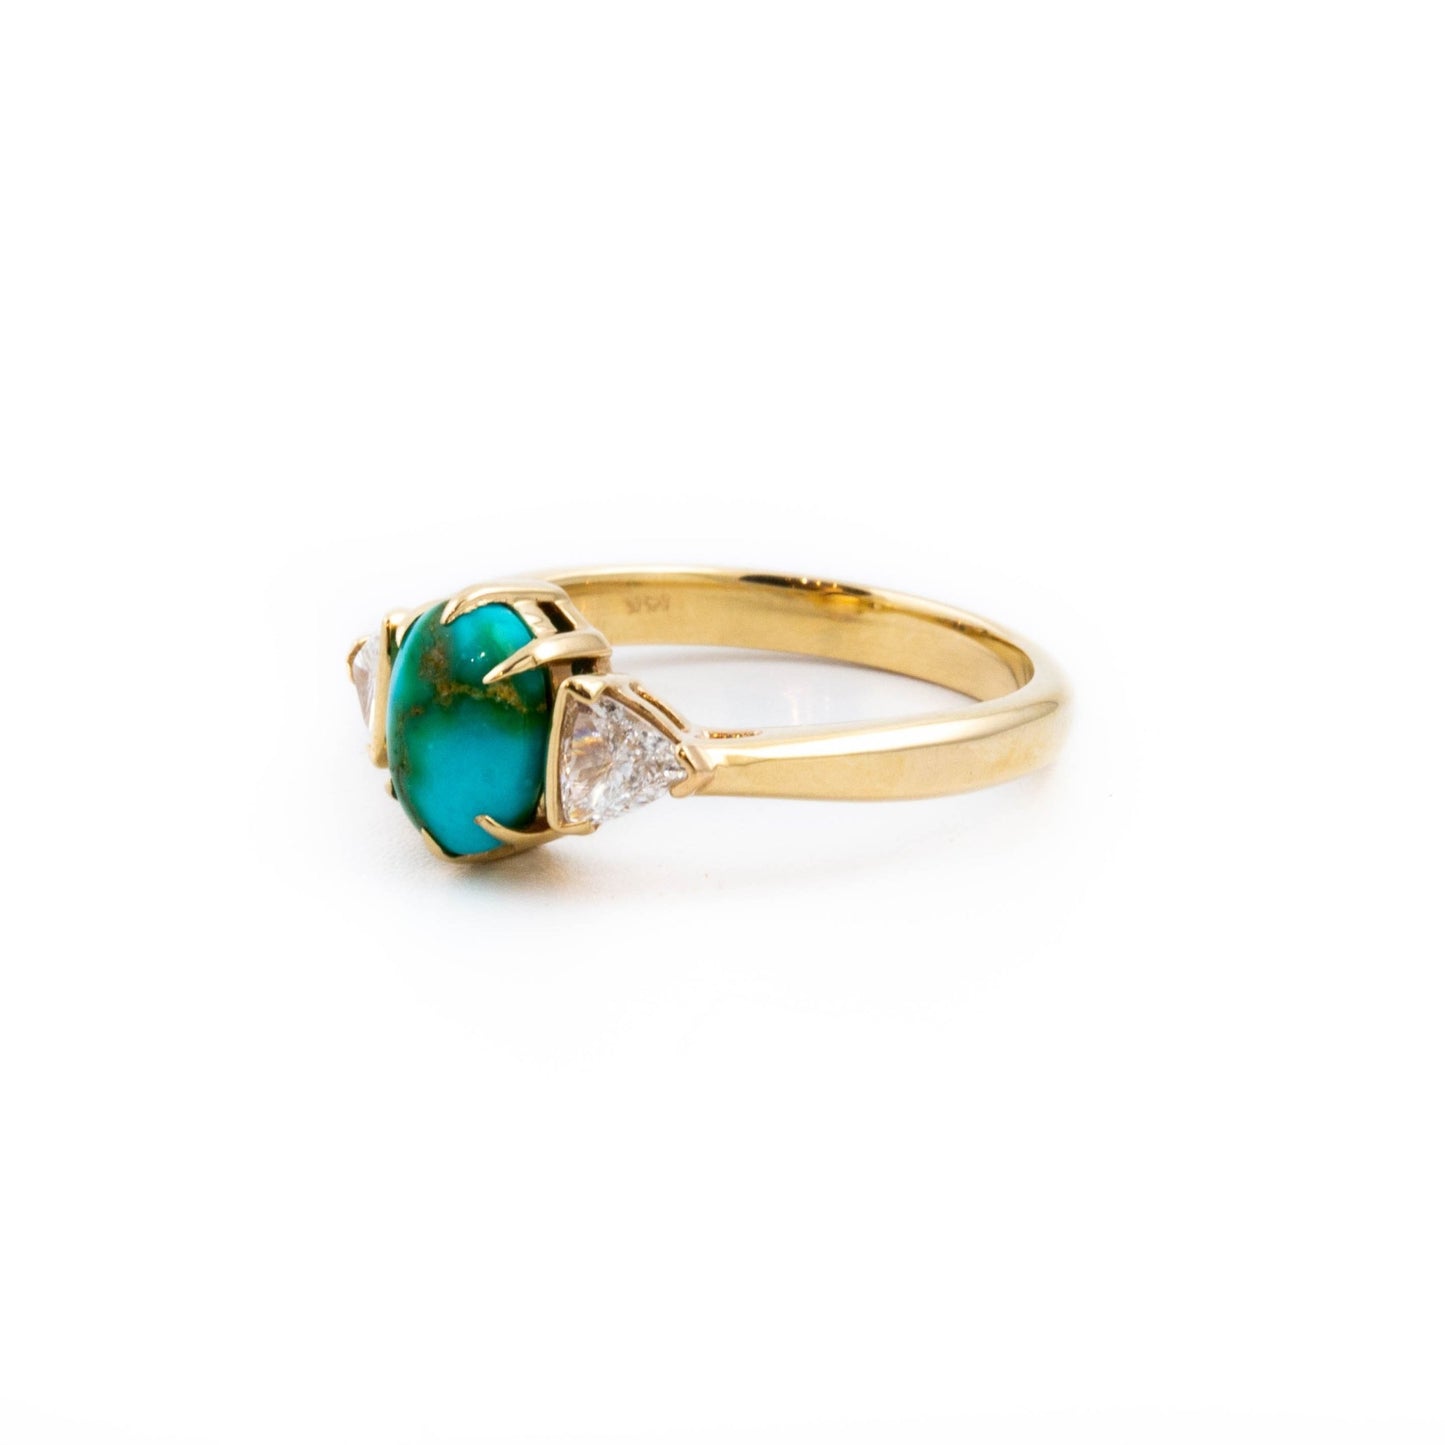 Dreamy Turquoise Diamond Ring - Kingdom Jewelry